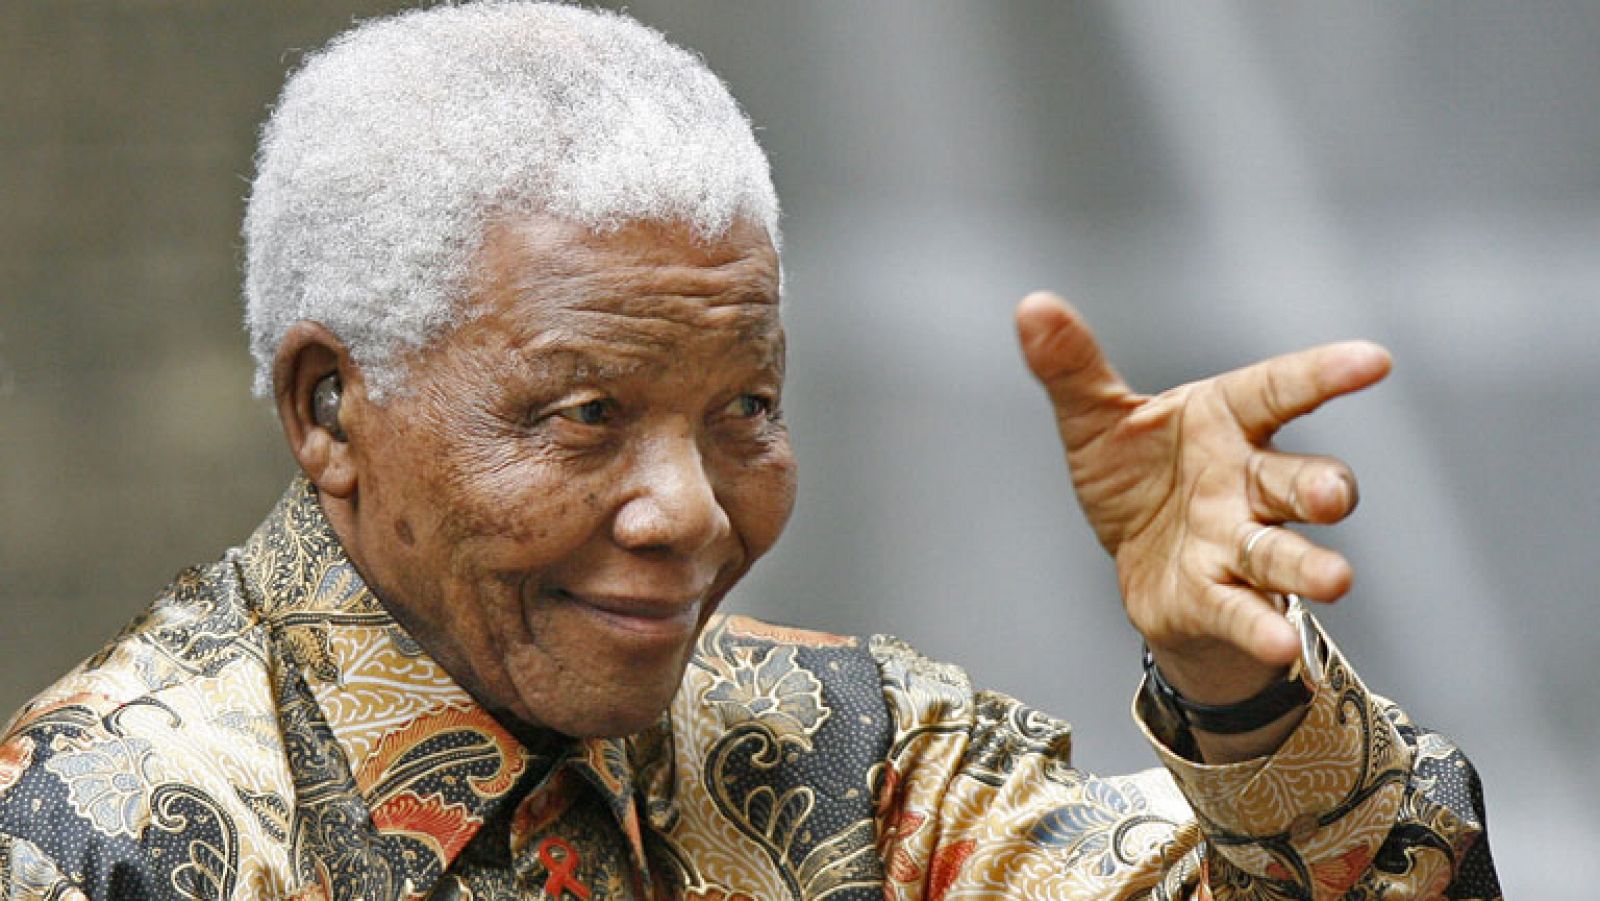 Nelson Mandela ha sido hospitalizado debido a "una recaída de su infección pulmonar", según ha confirmado este jueves el Gobierno de Sudáfrica. El pasado diciembre, el líder sudafricano estuvo hospitalizado casi tres semanas por la misma dolencia y, a principios de este mes, ingresó un día para realizarse un chequeo médico.